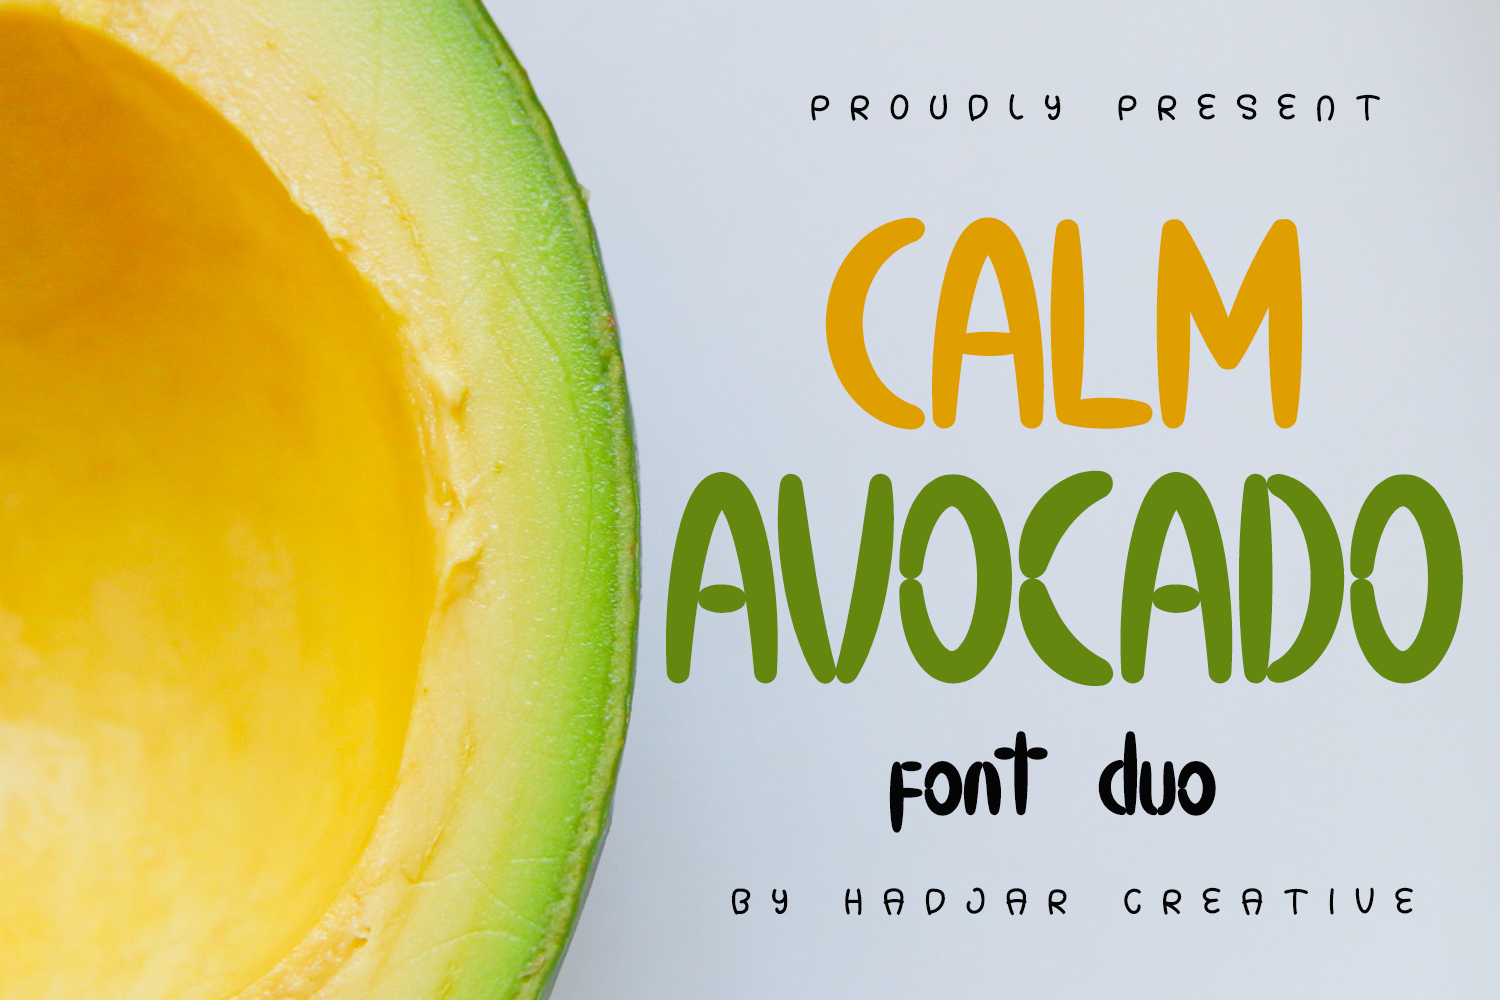 Calm Avocado